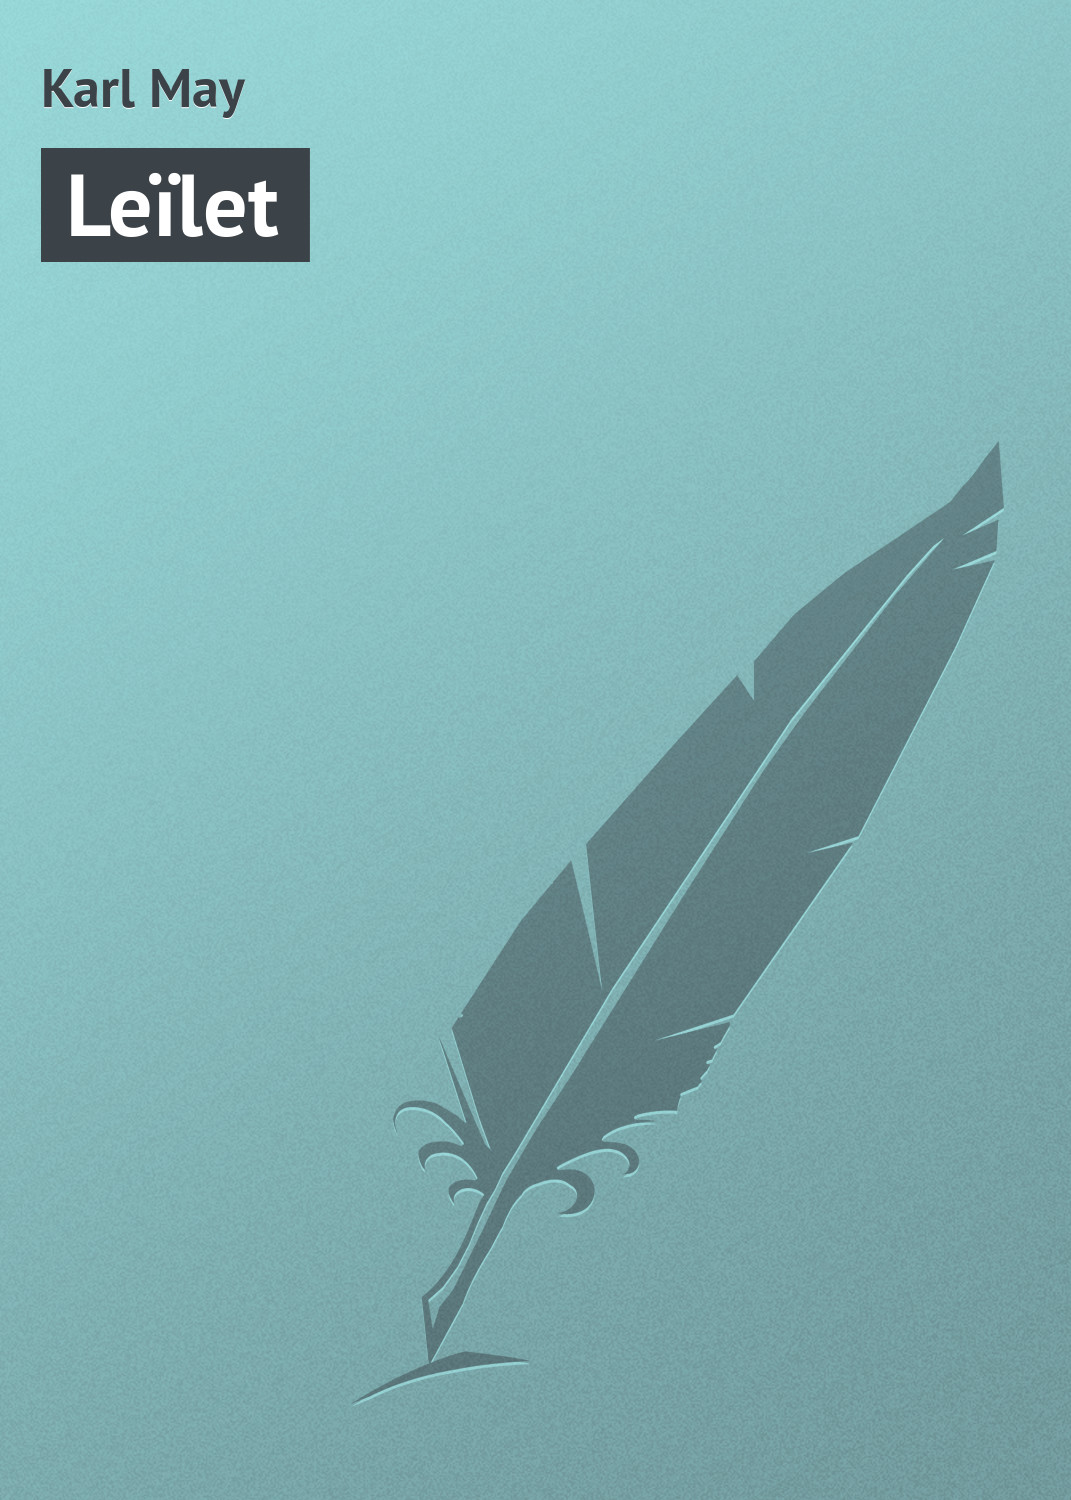 Книга Leïlet из серии , созданная Karl May, может относится к жанру Зарубежная старинная литература, Зарубежная классика. Стоимость электронной книги Leïlet с идентификатором 21107006 составляет 5.99 руб.